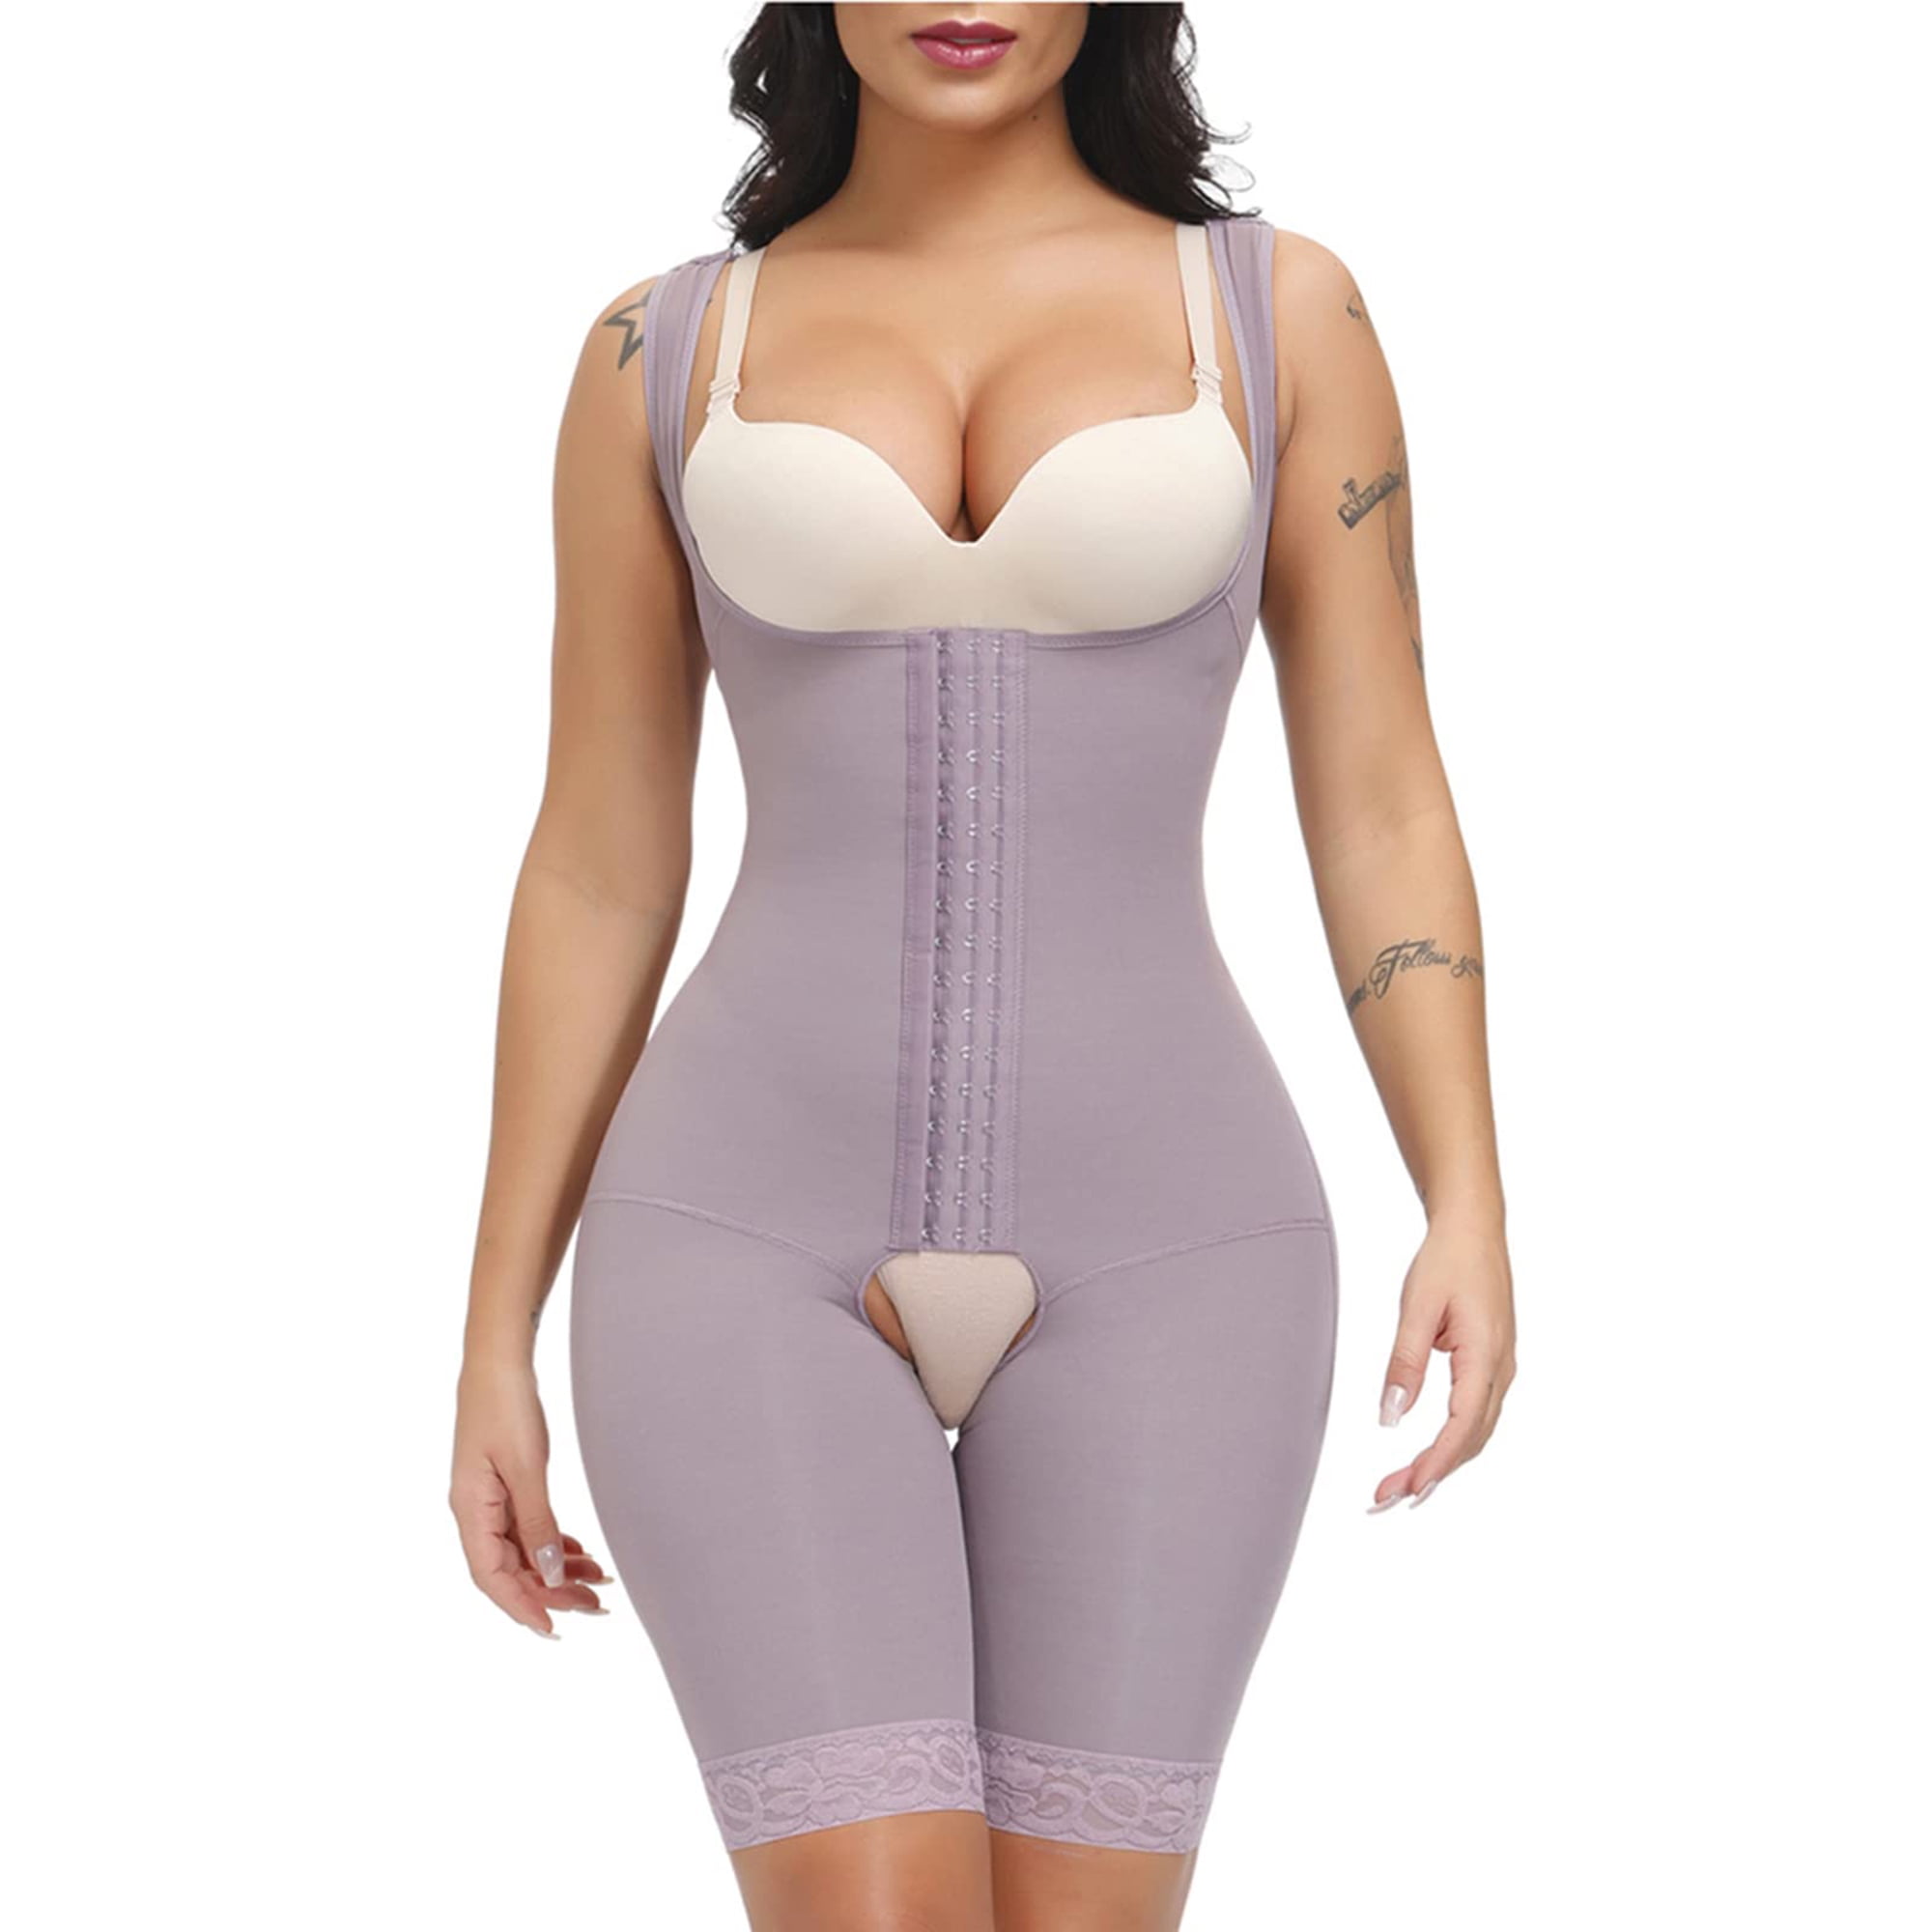 JOSHINE Girdles for Women Body Shaper Extra Firm Tummy Control purple,XXL